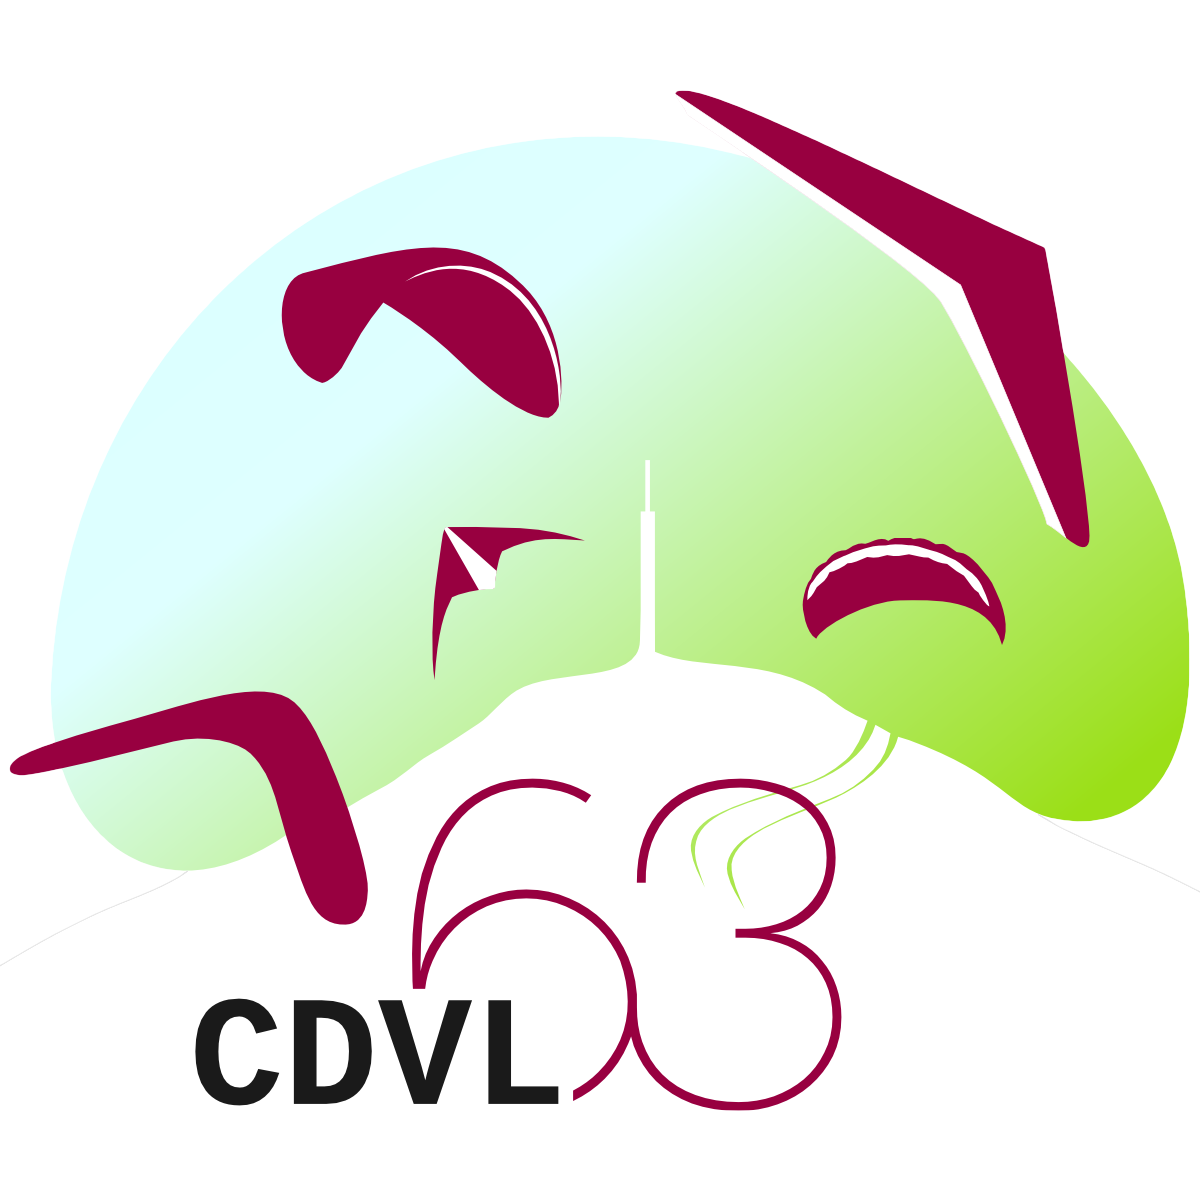 CDVL 63